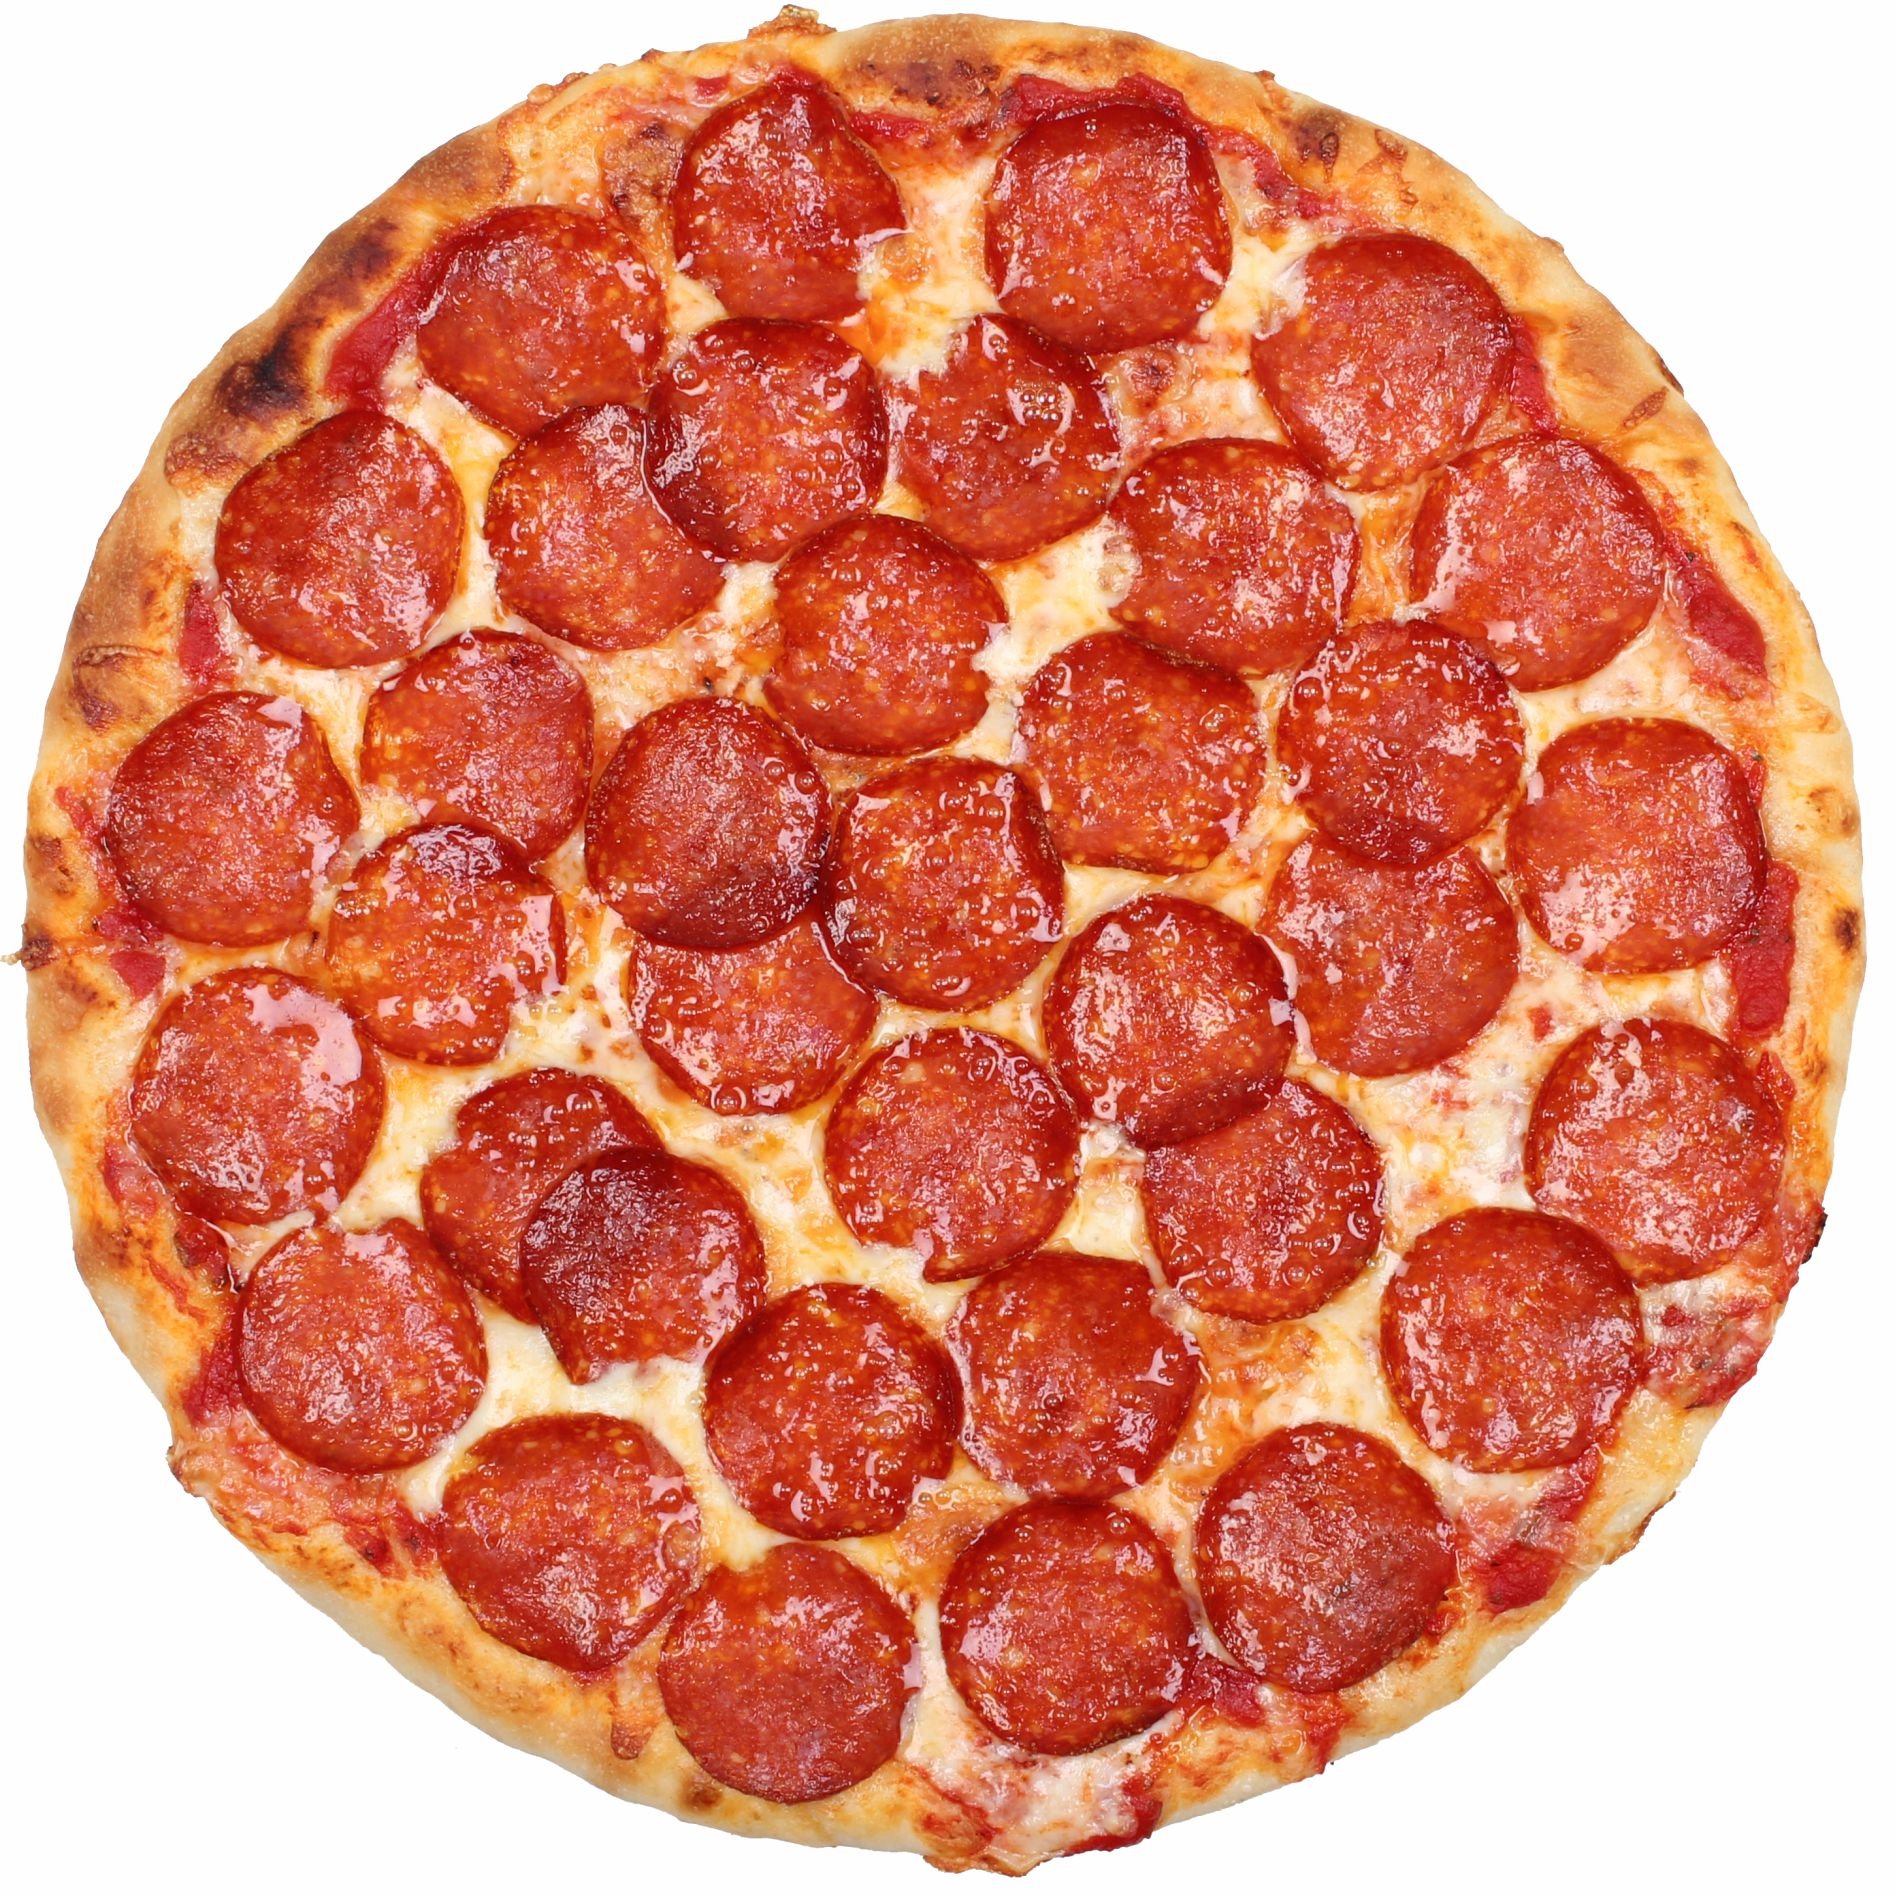 состав начинки для пиццы пепперони фото 67